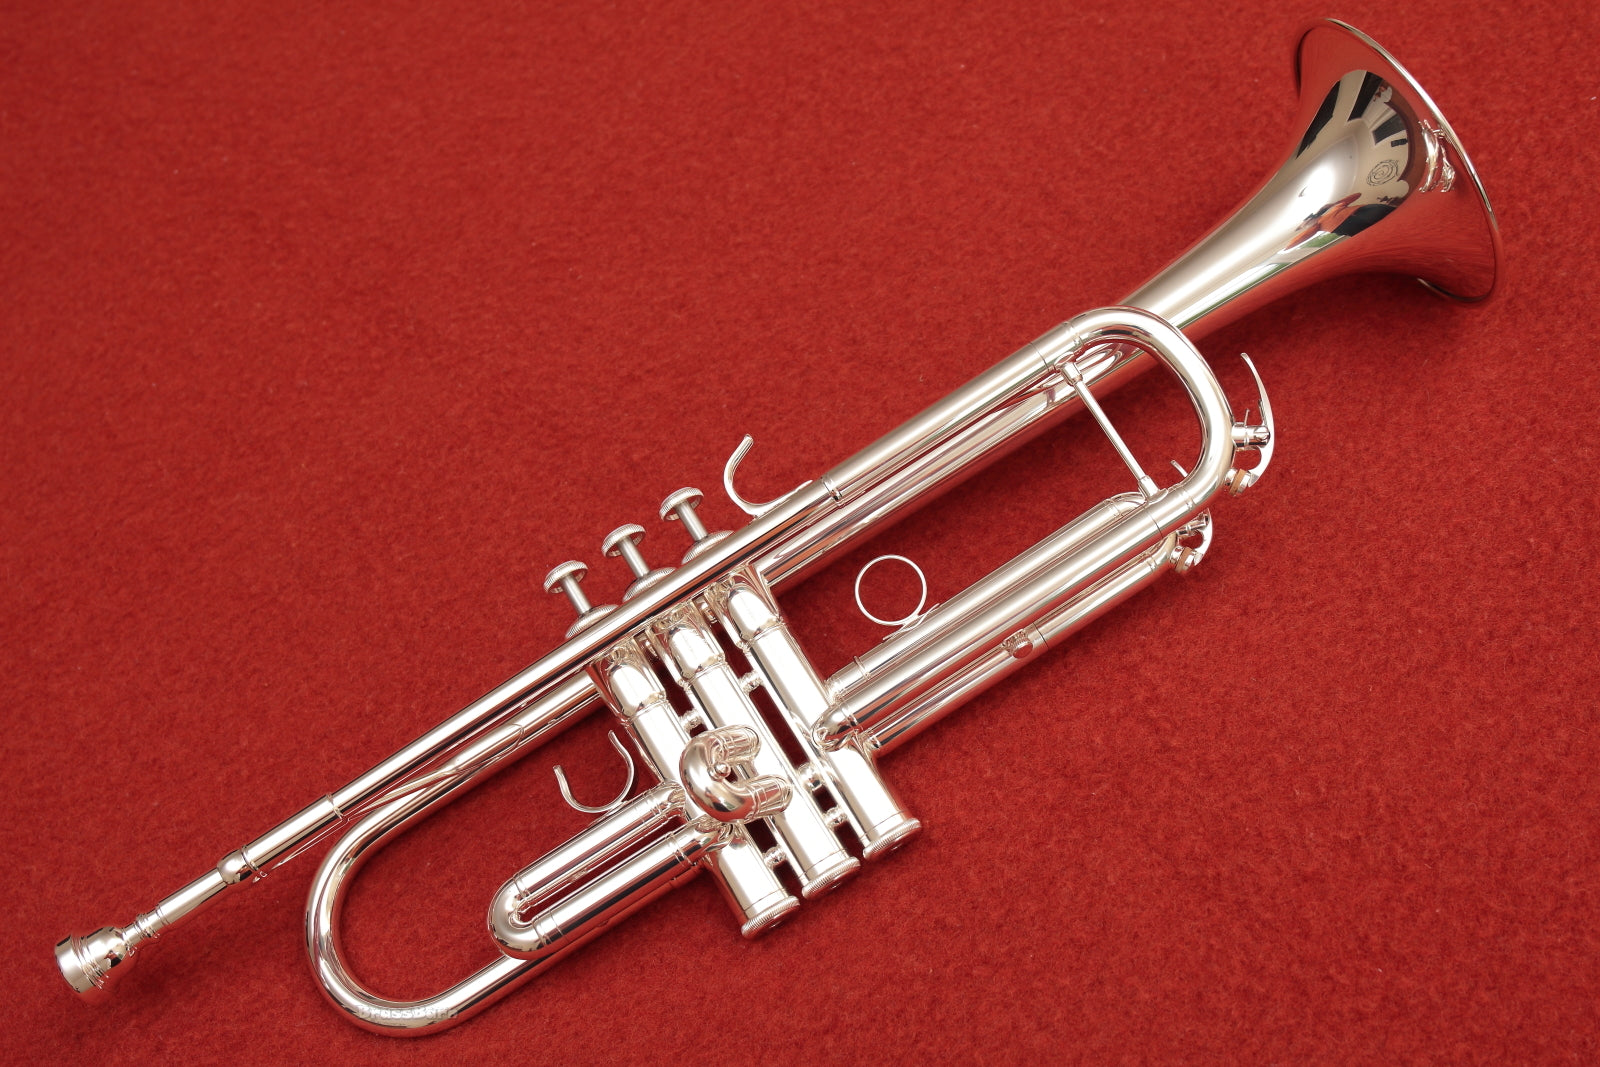 Trompete Yamaha YTR3335S Prateado